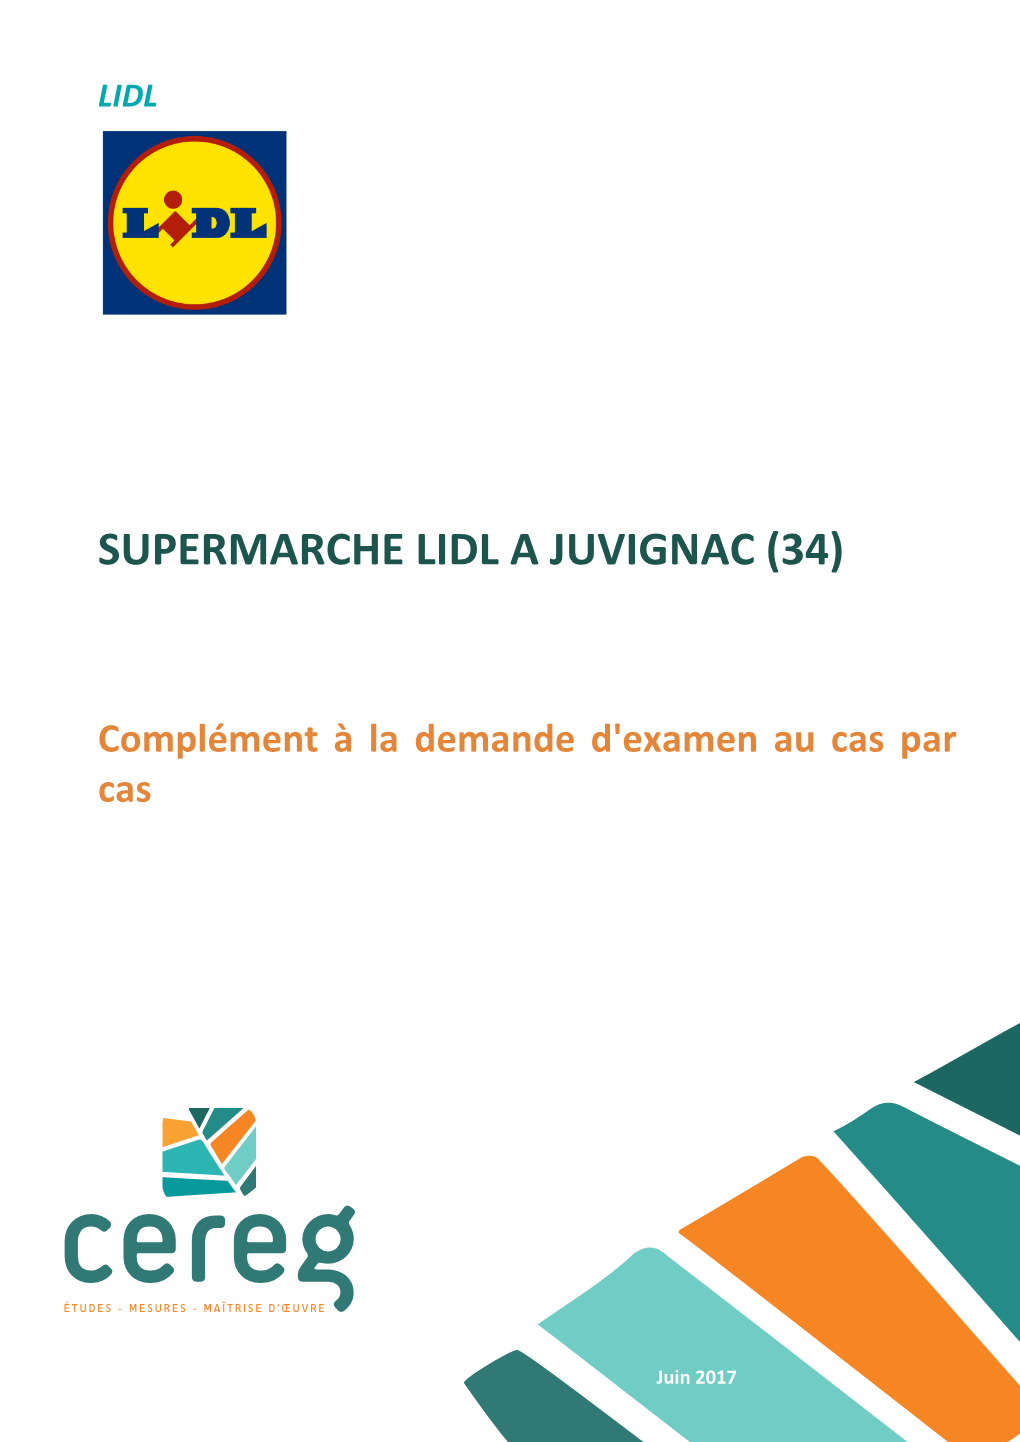 Supermarche Lidl a Juvignac (34)